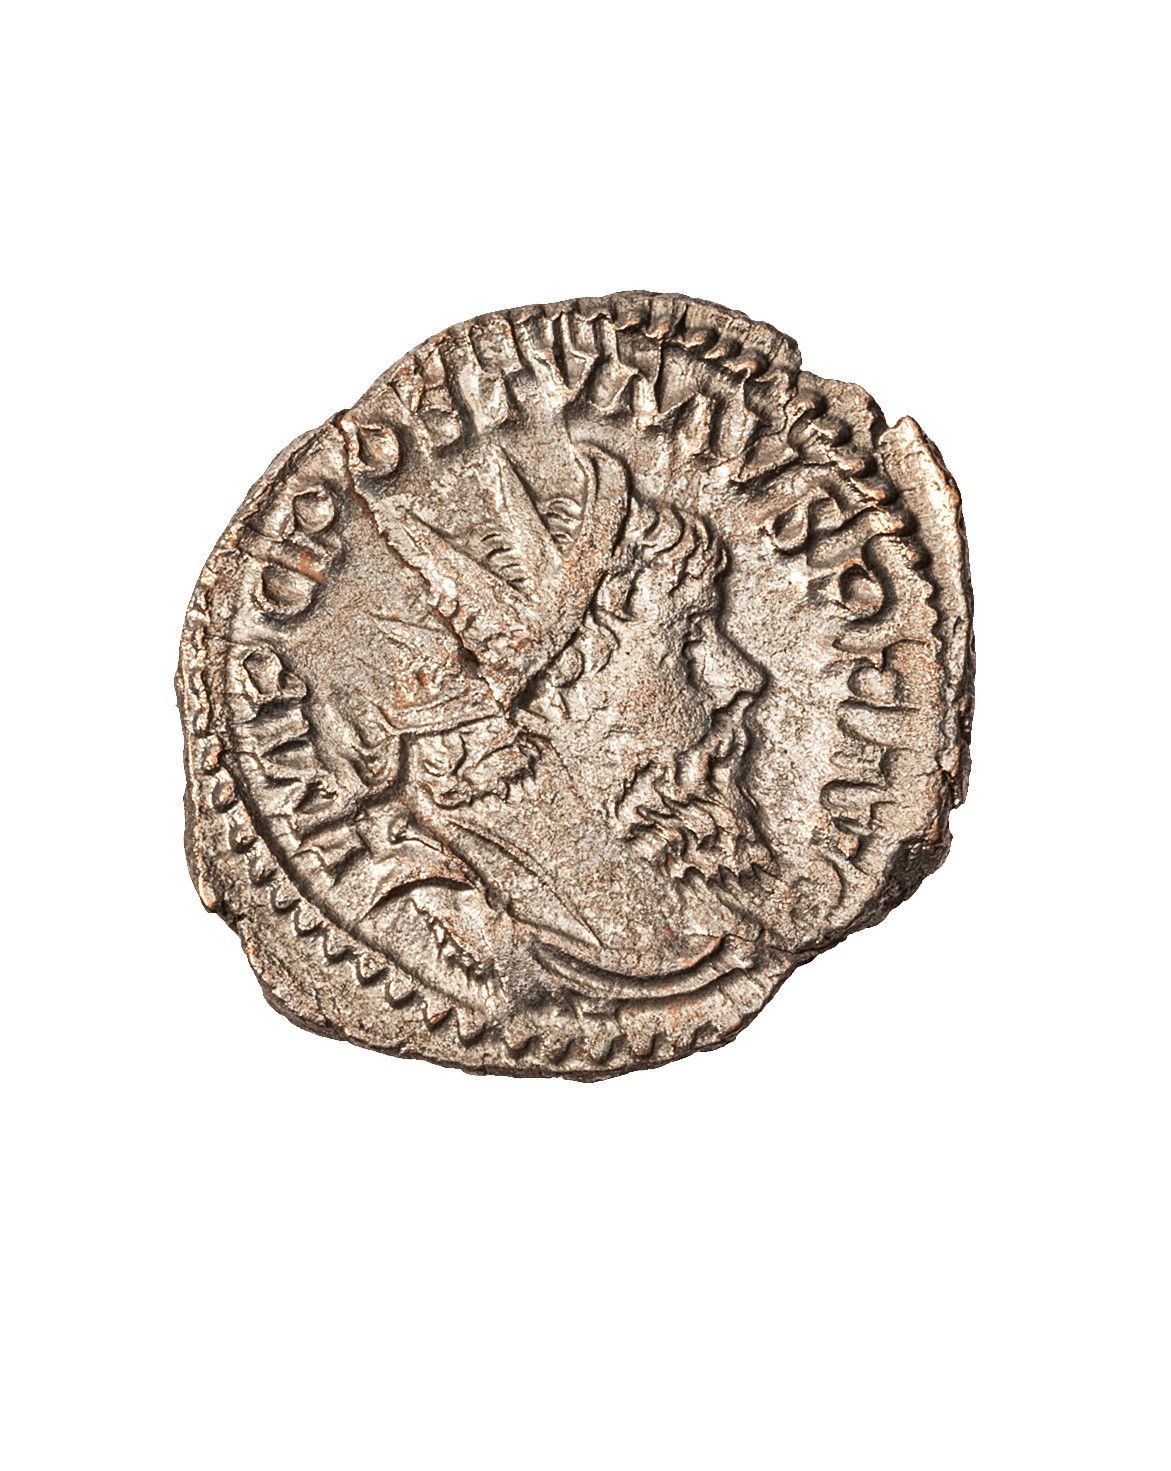 Null POSTUME 

Antoninien frappé à Trèves en 268

R/ Massue, arc et carquois 

C&hellip;